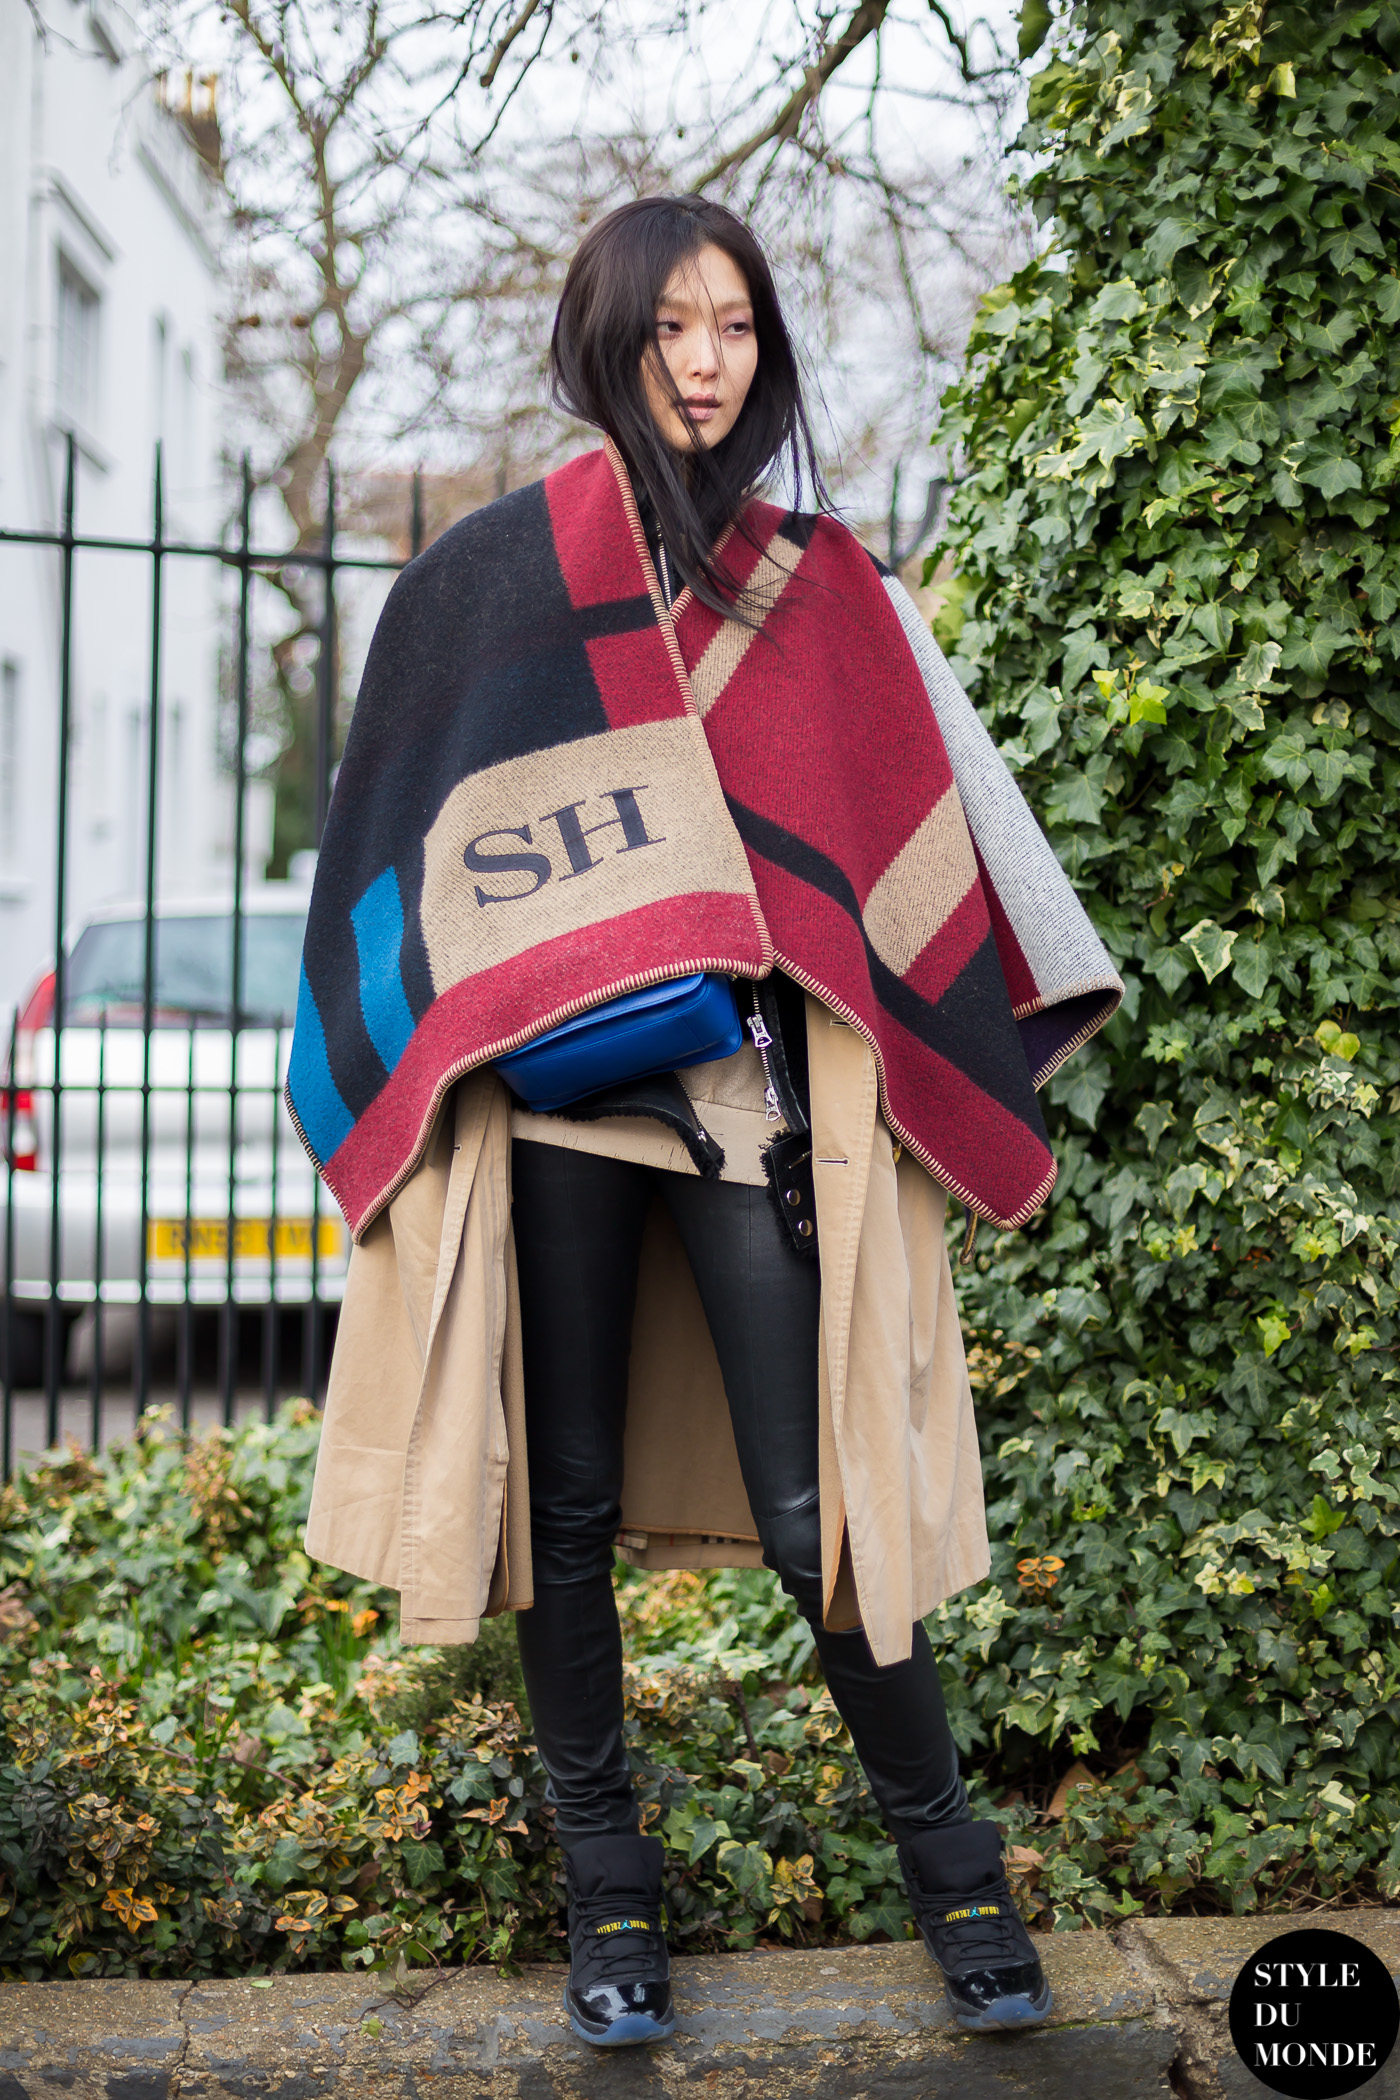 London Fashion Week FW 2014 Street Style: Sunghee Kim - STYLE DU MONDE ...